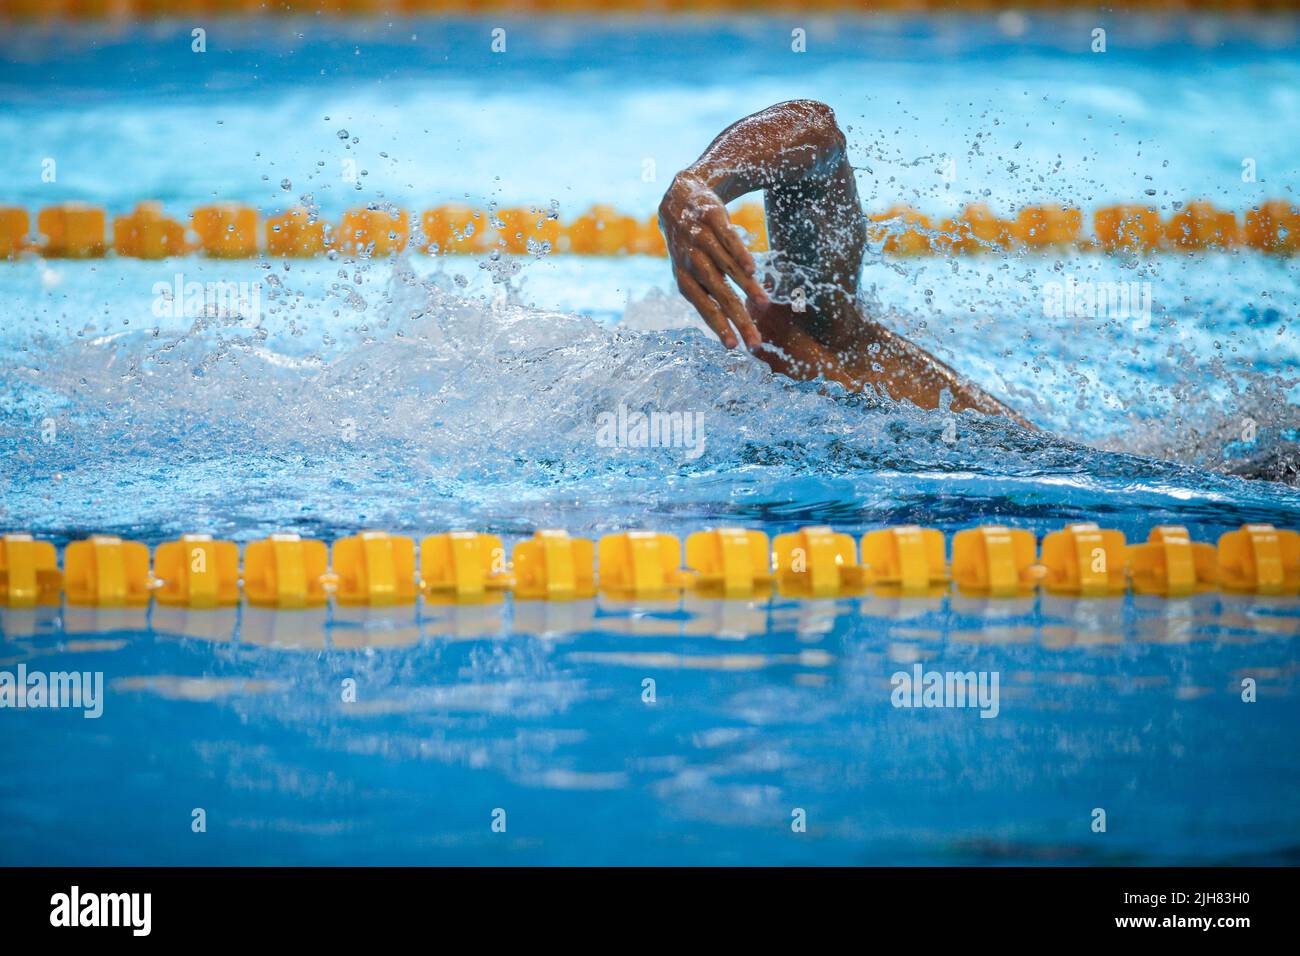 Dettagli con un atleta maschile professionista nuoto in una piscina olimpionica freestyle. Foto Stock